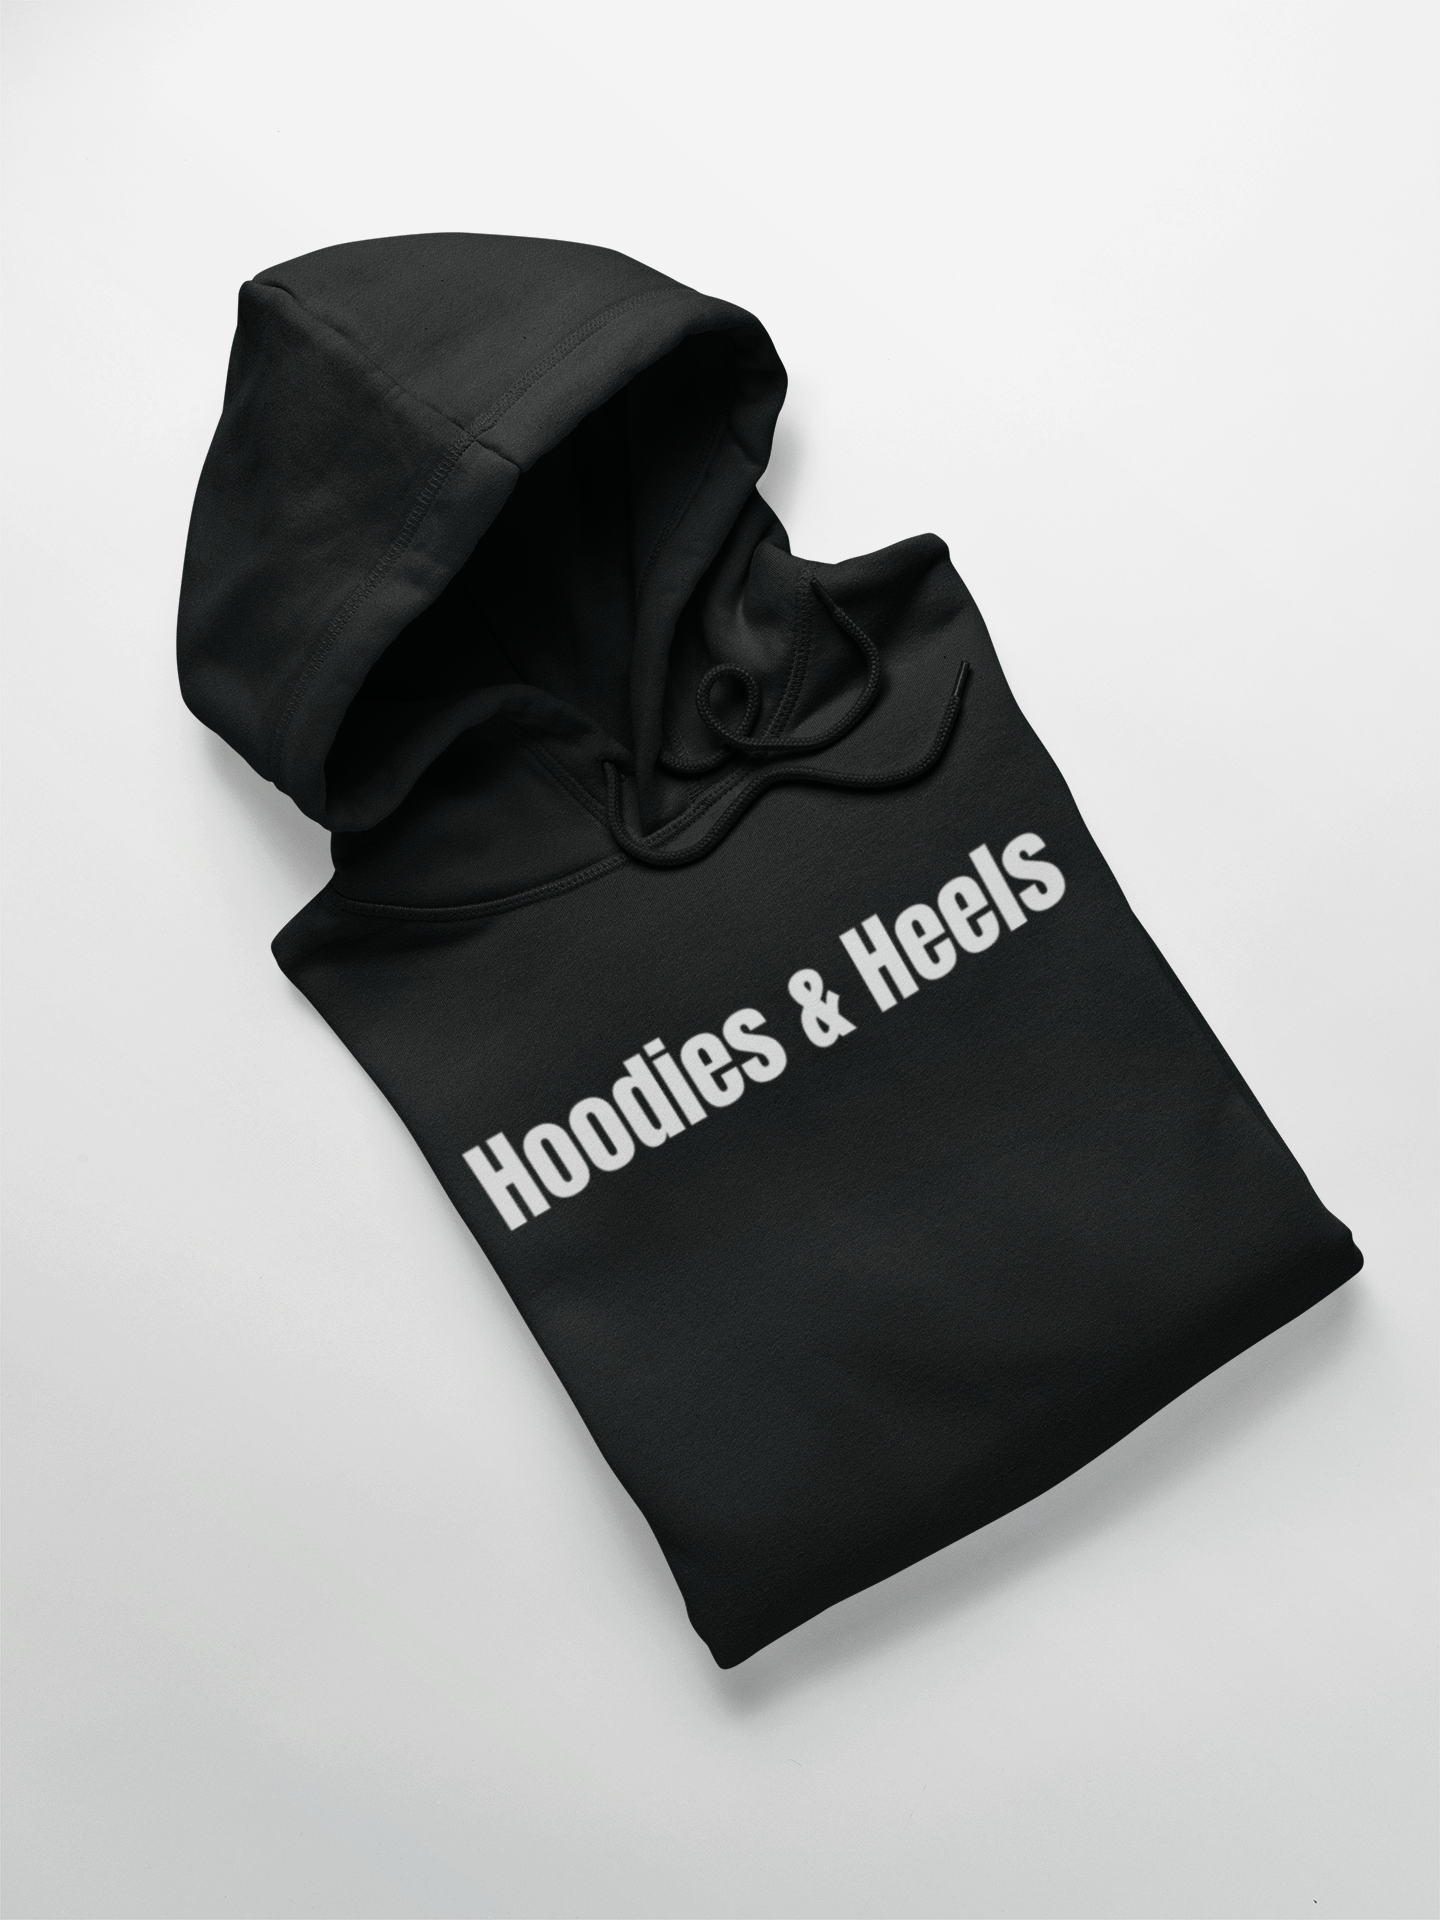 Hoodies & Heels Hoodie